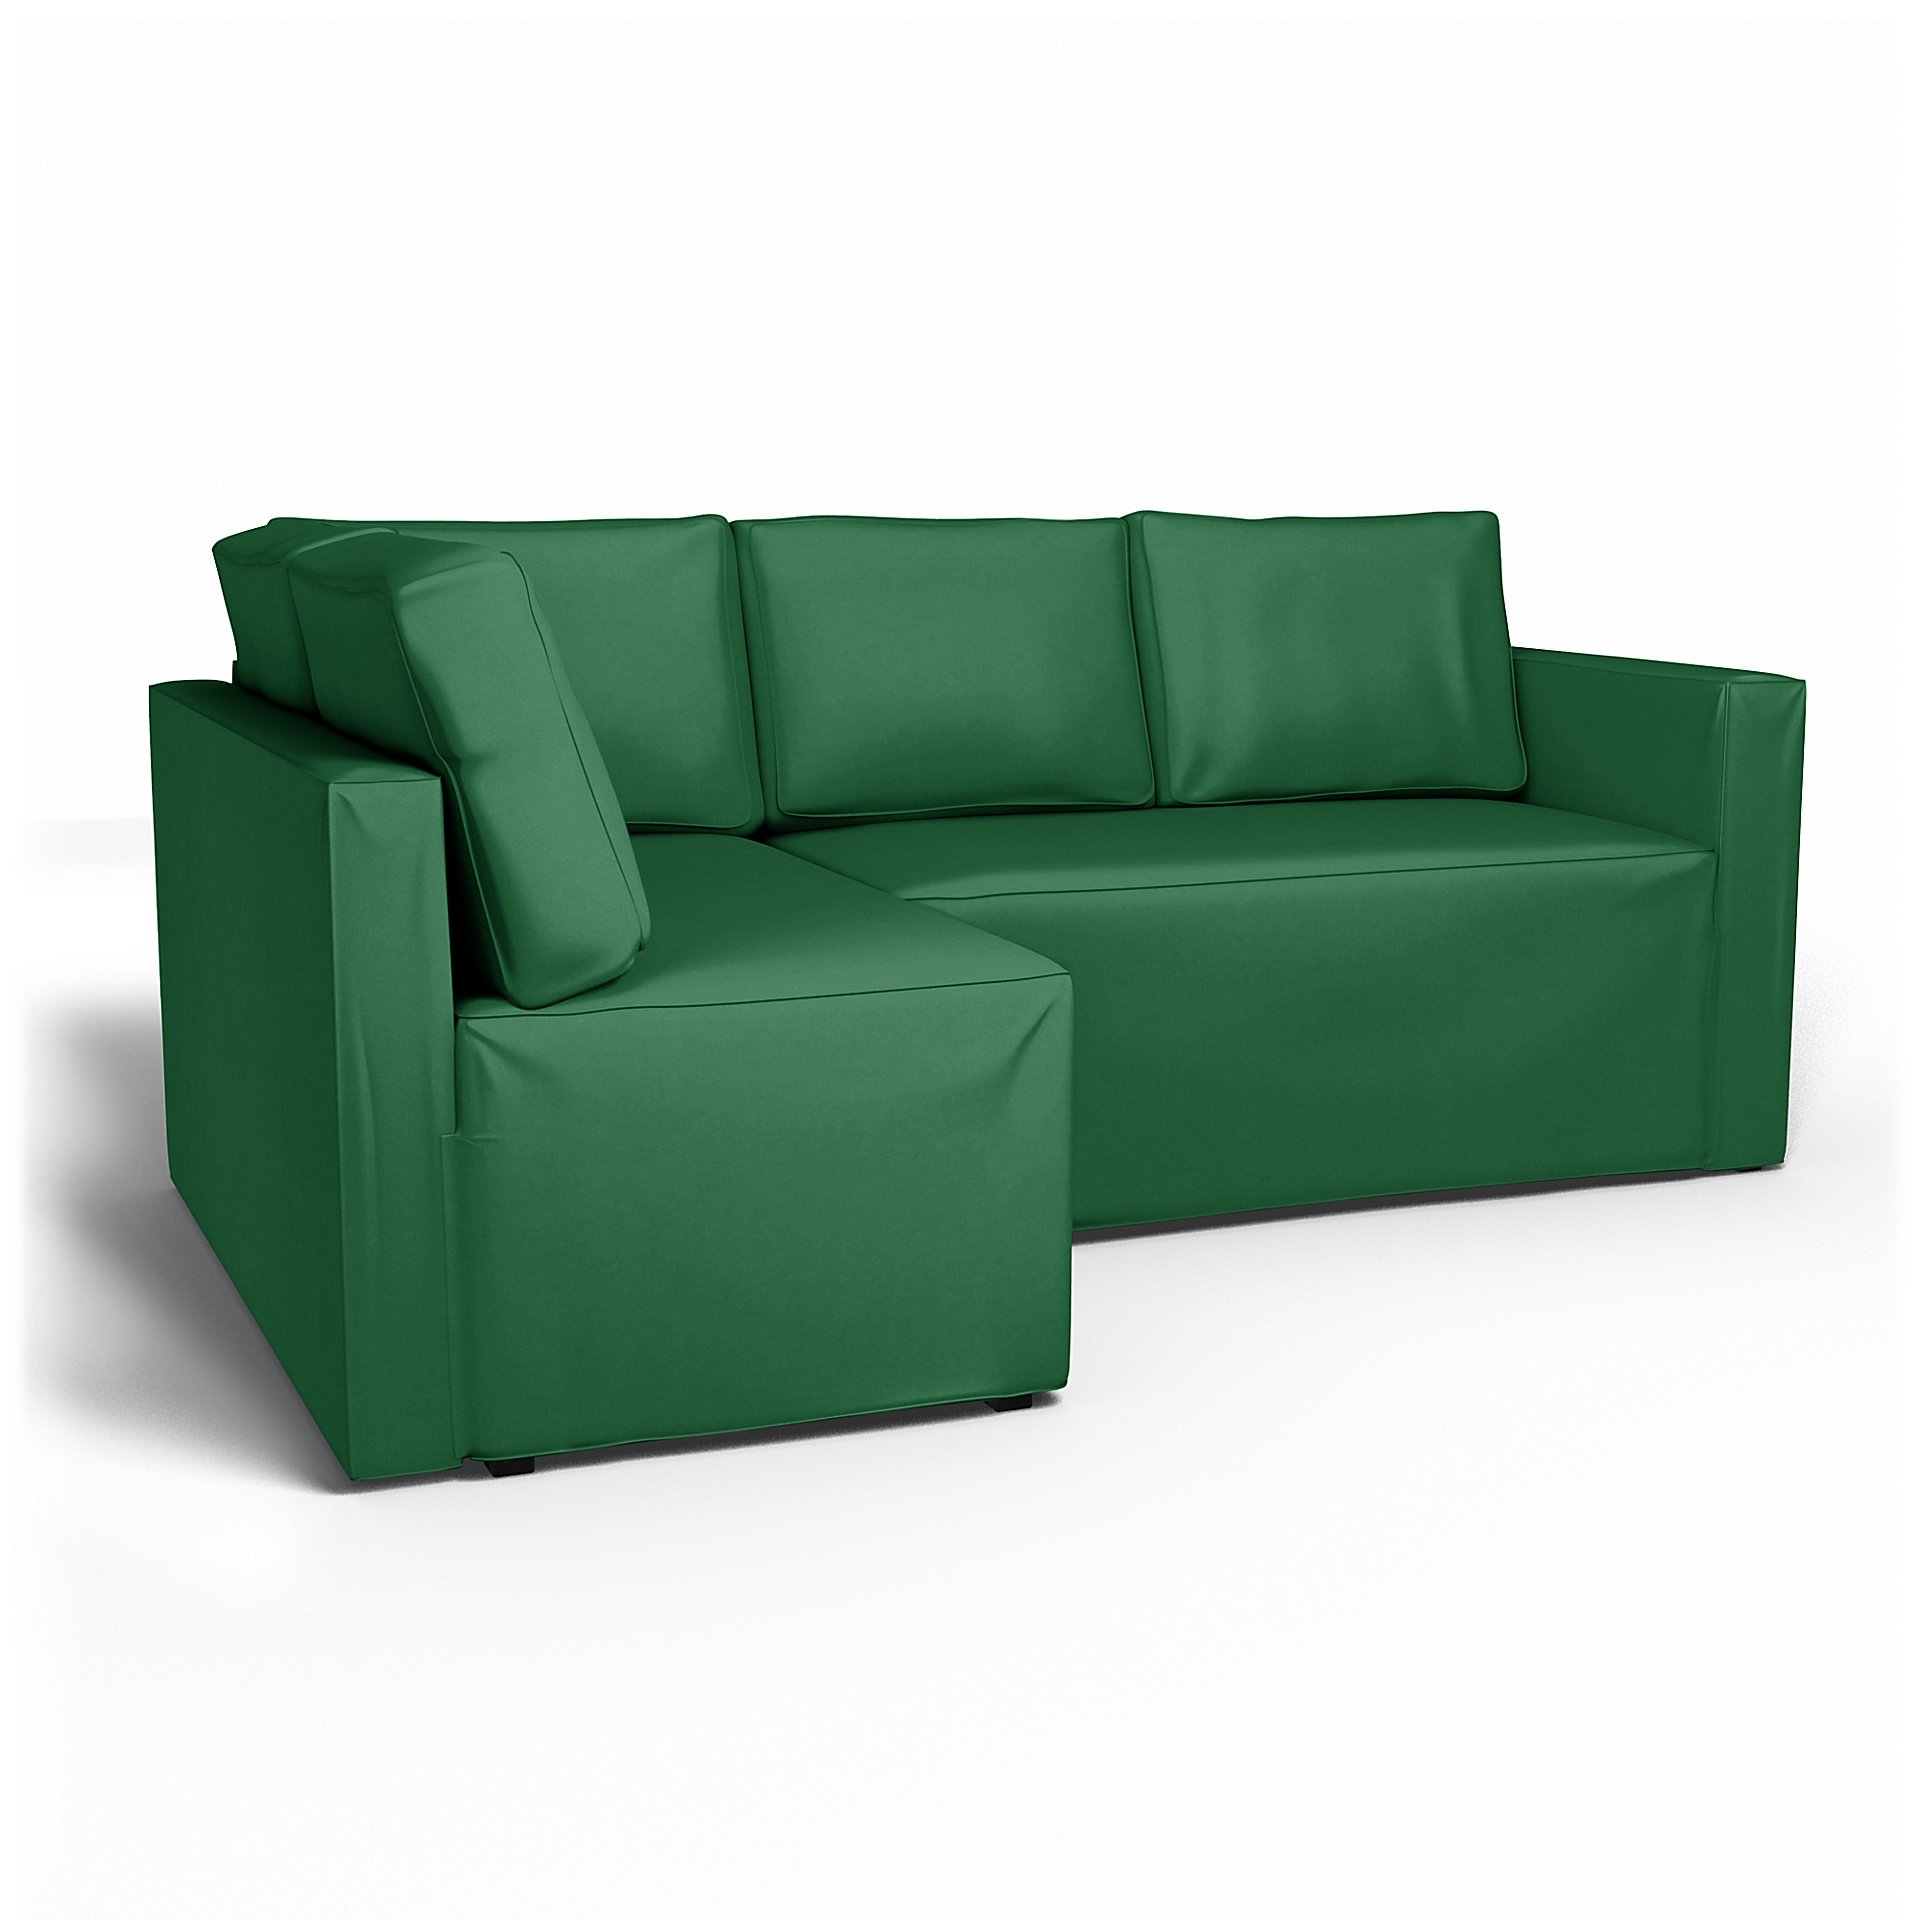 IKEA - Fagelbo Sofa Bed with Left Chaise Cover, Abundant Green, Velvet - Bemz